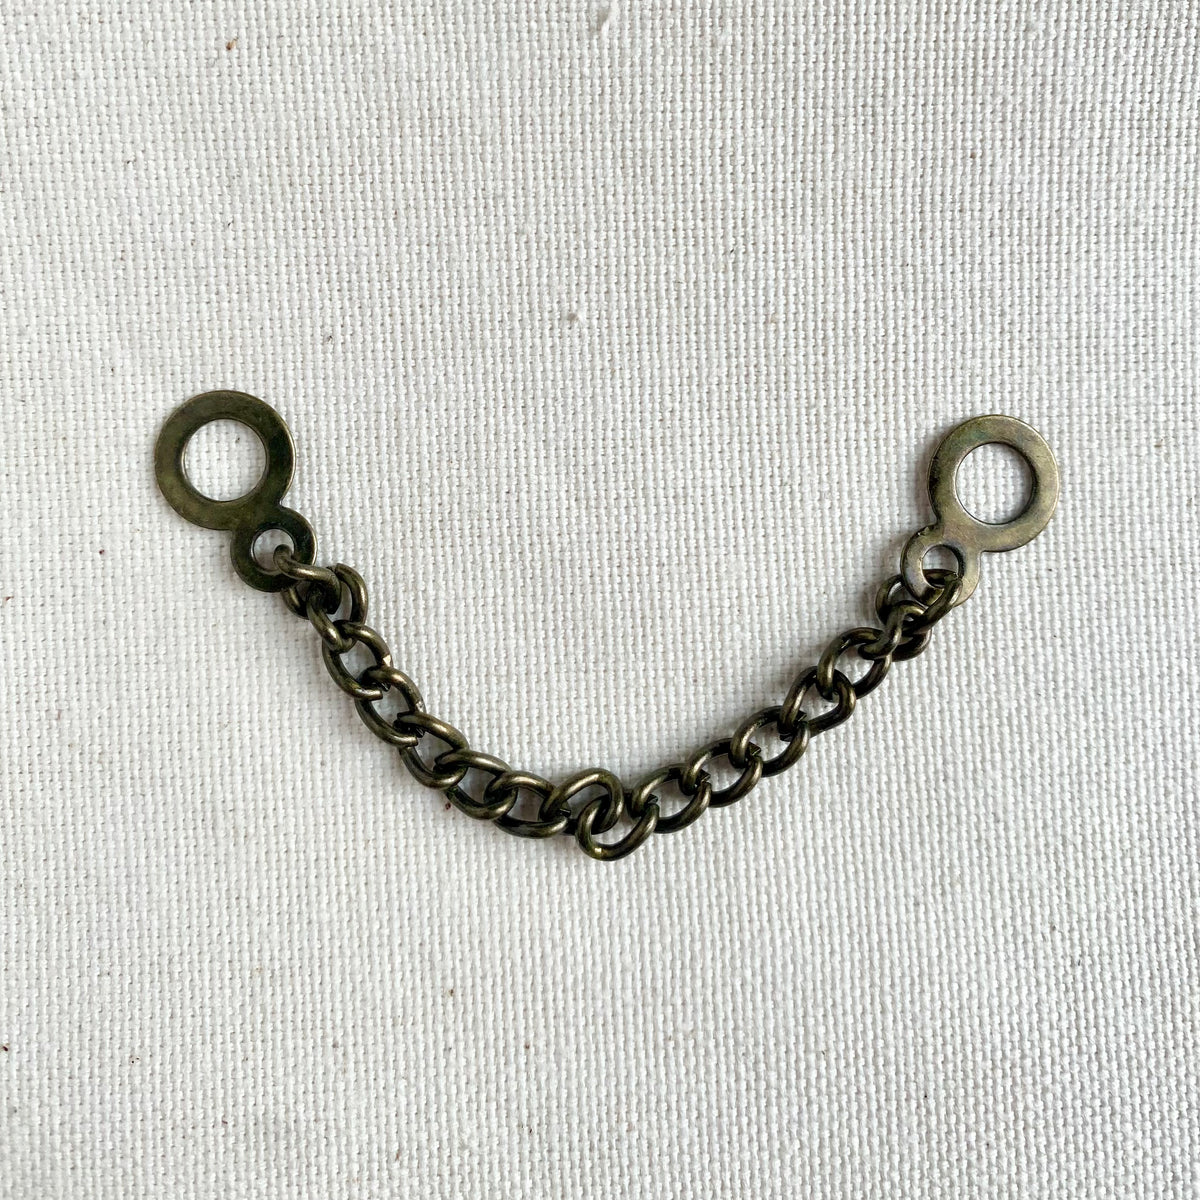 Metal Coat Hanging Chain Loop - Antique Brass